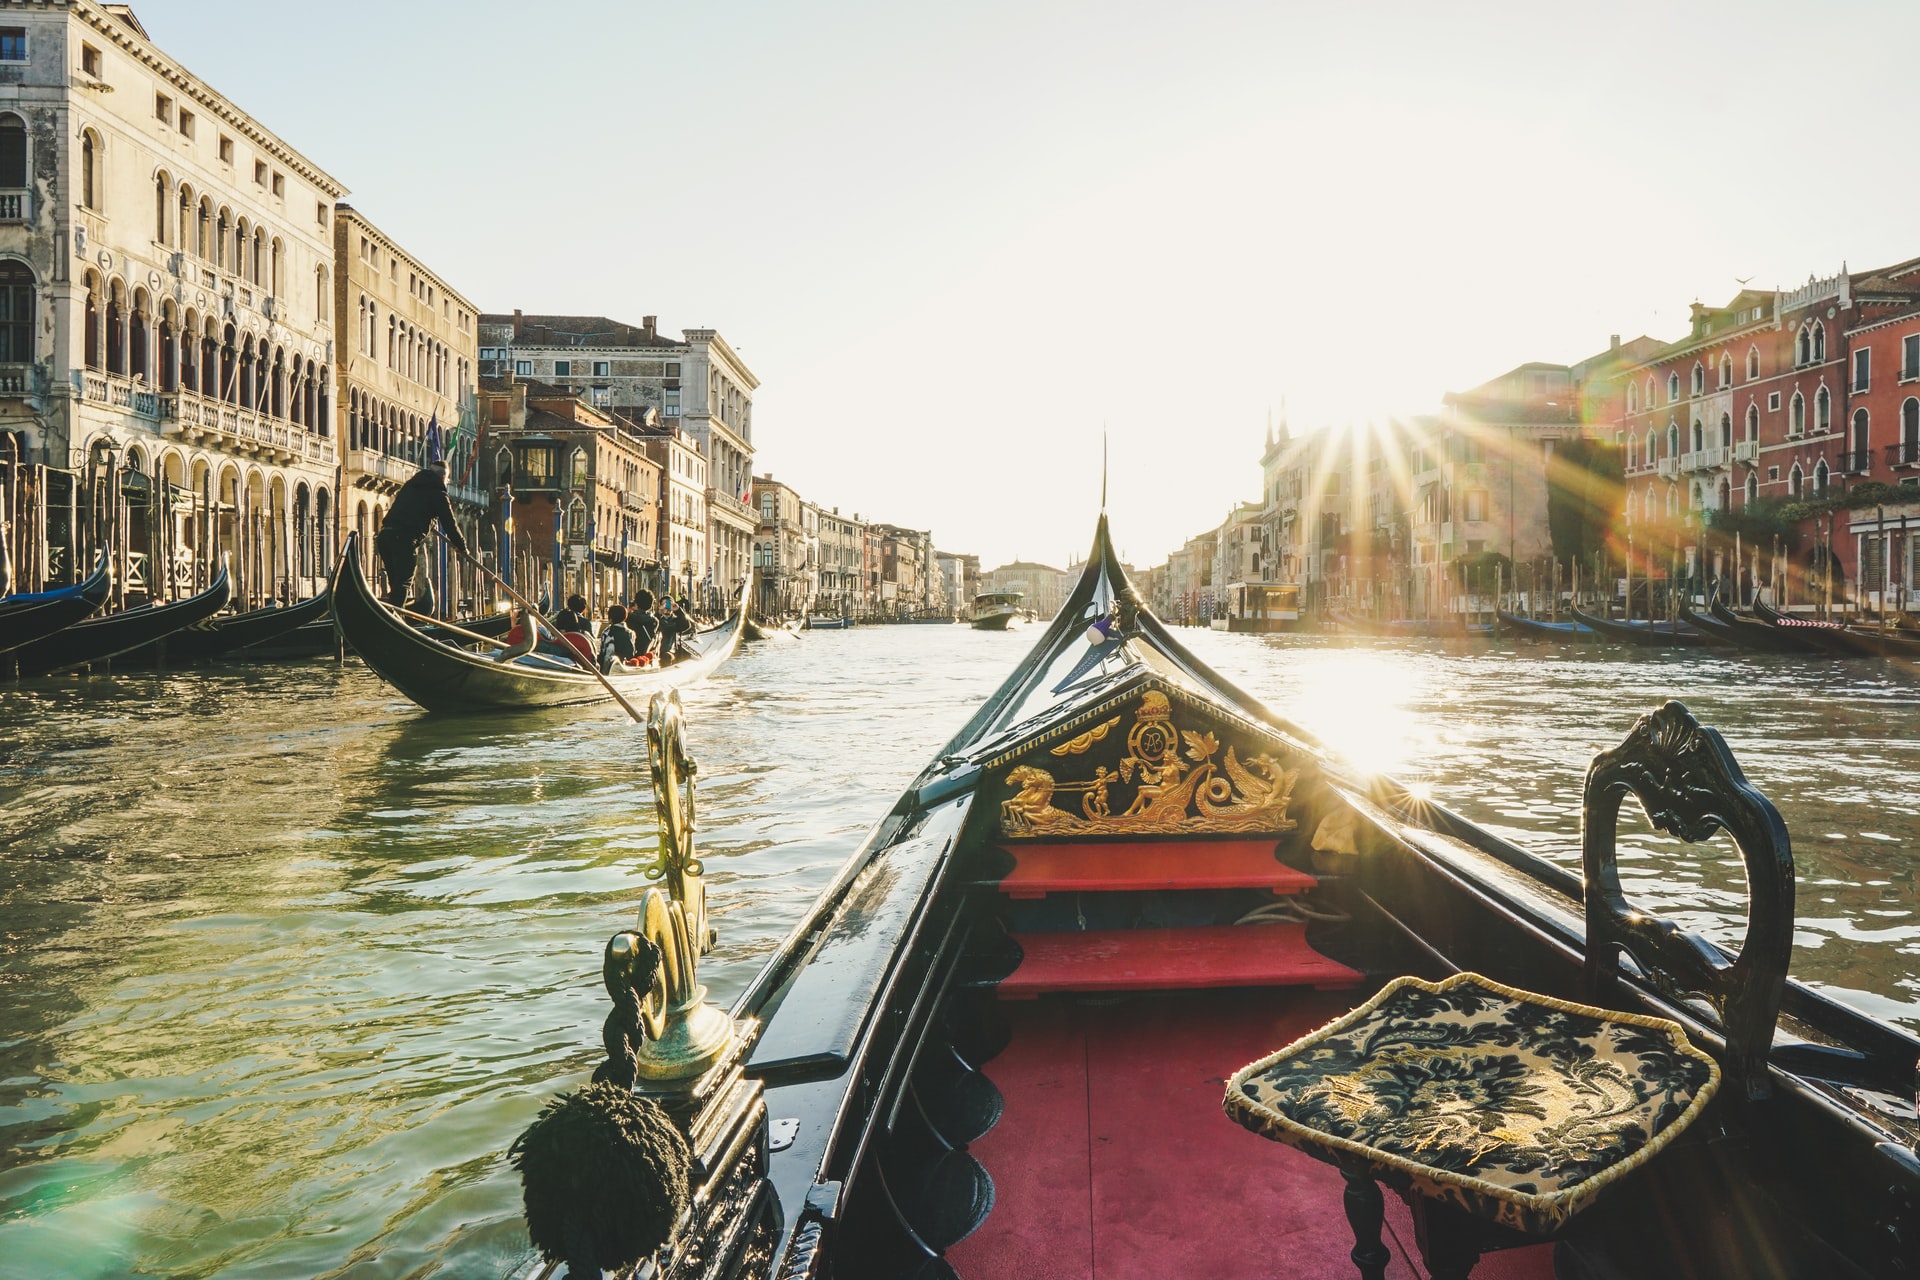 Pontos Turísticos da Itália: gôndolas no grande canal de veneza